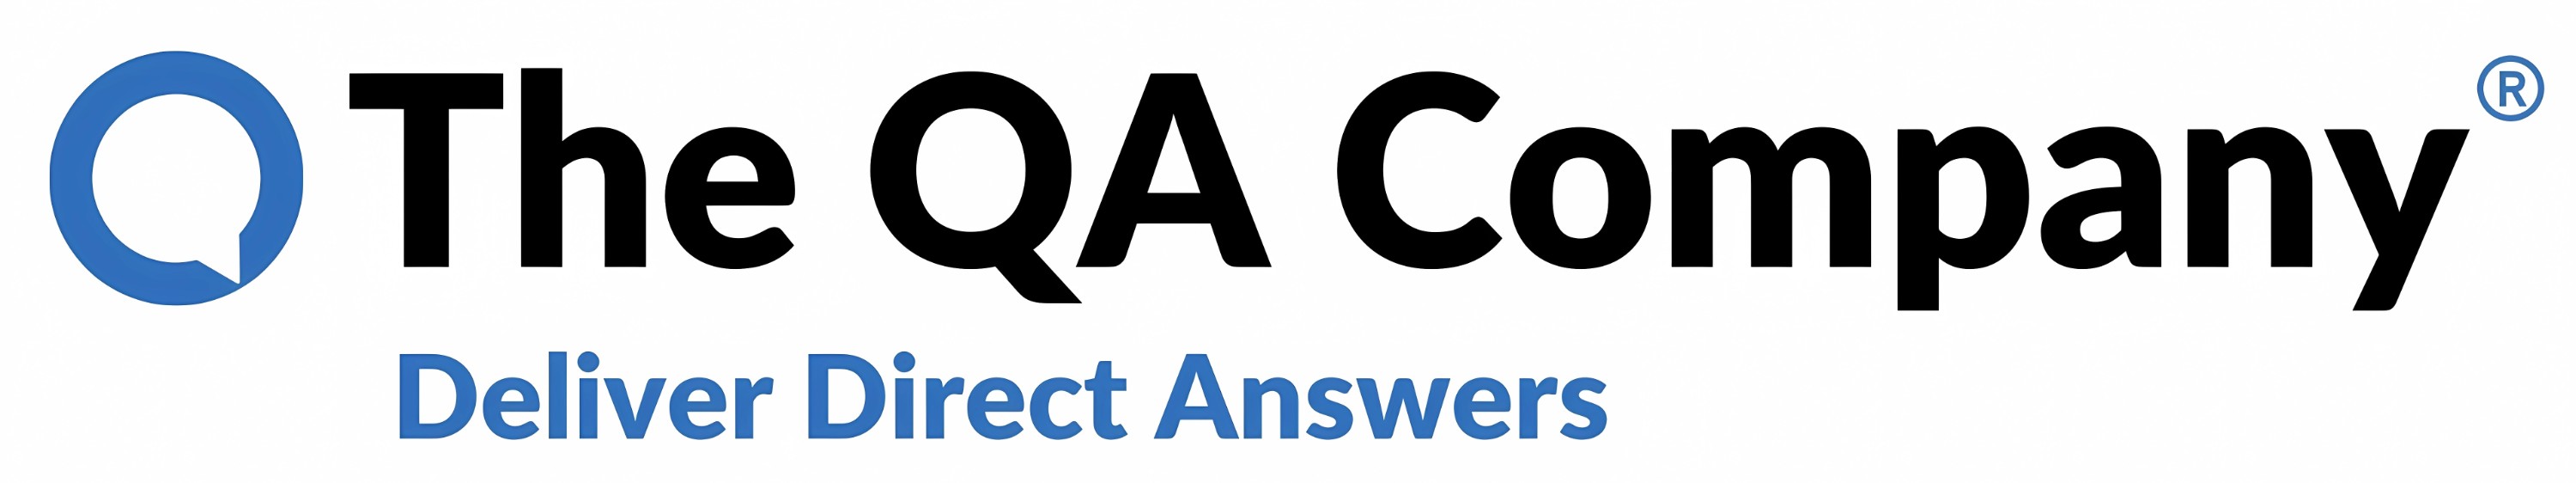 Logo THE QA COMPANY